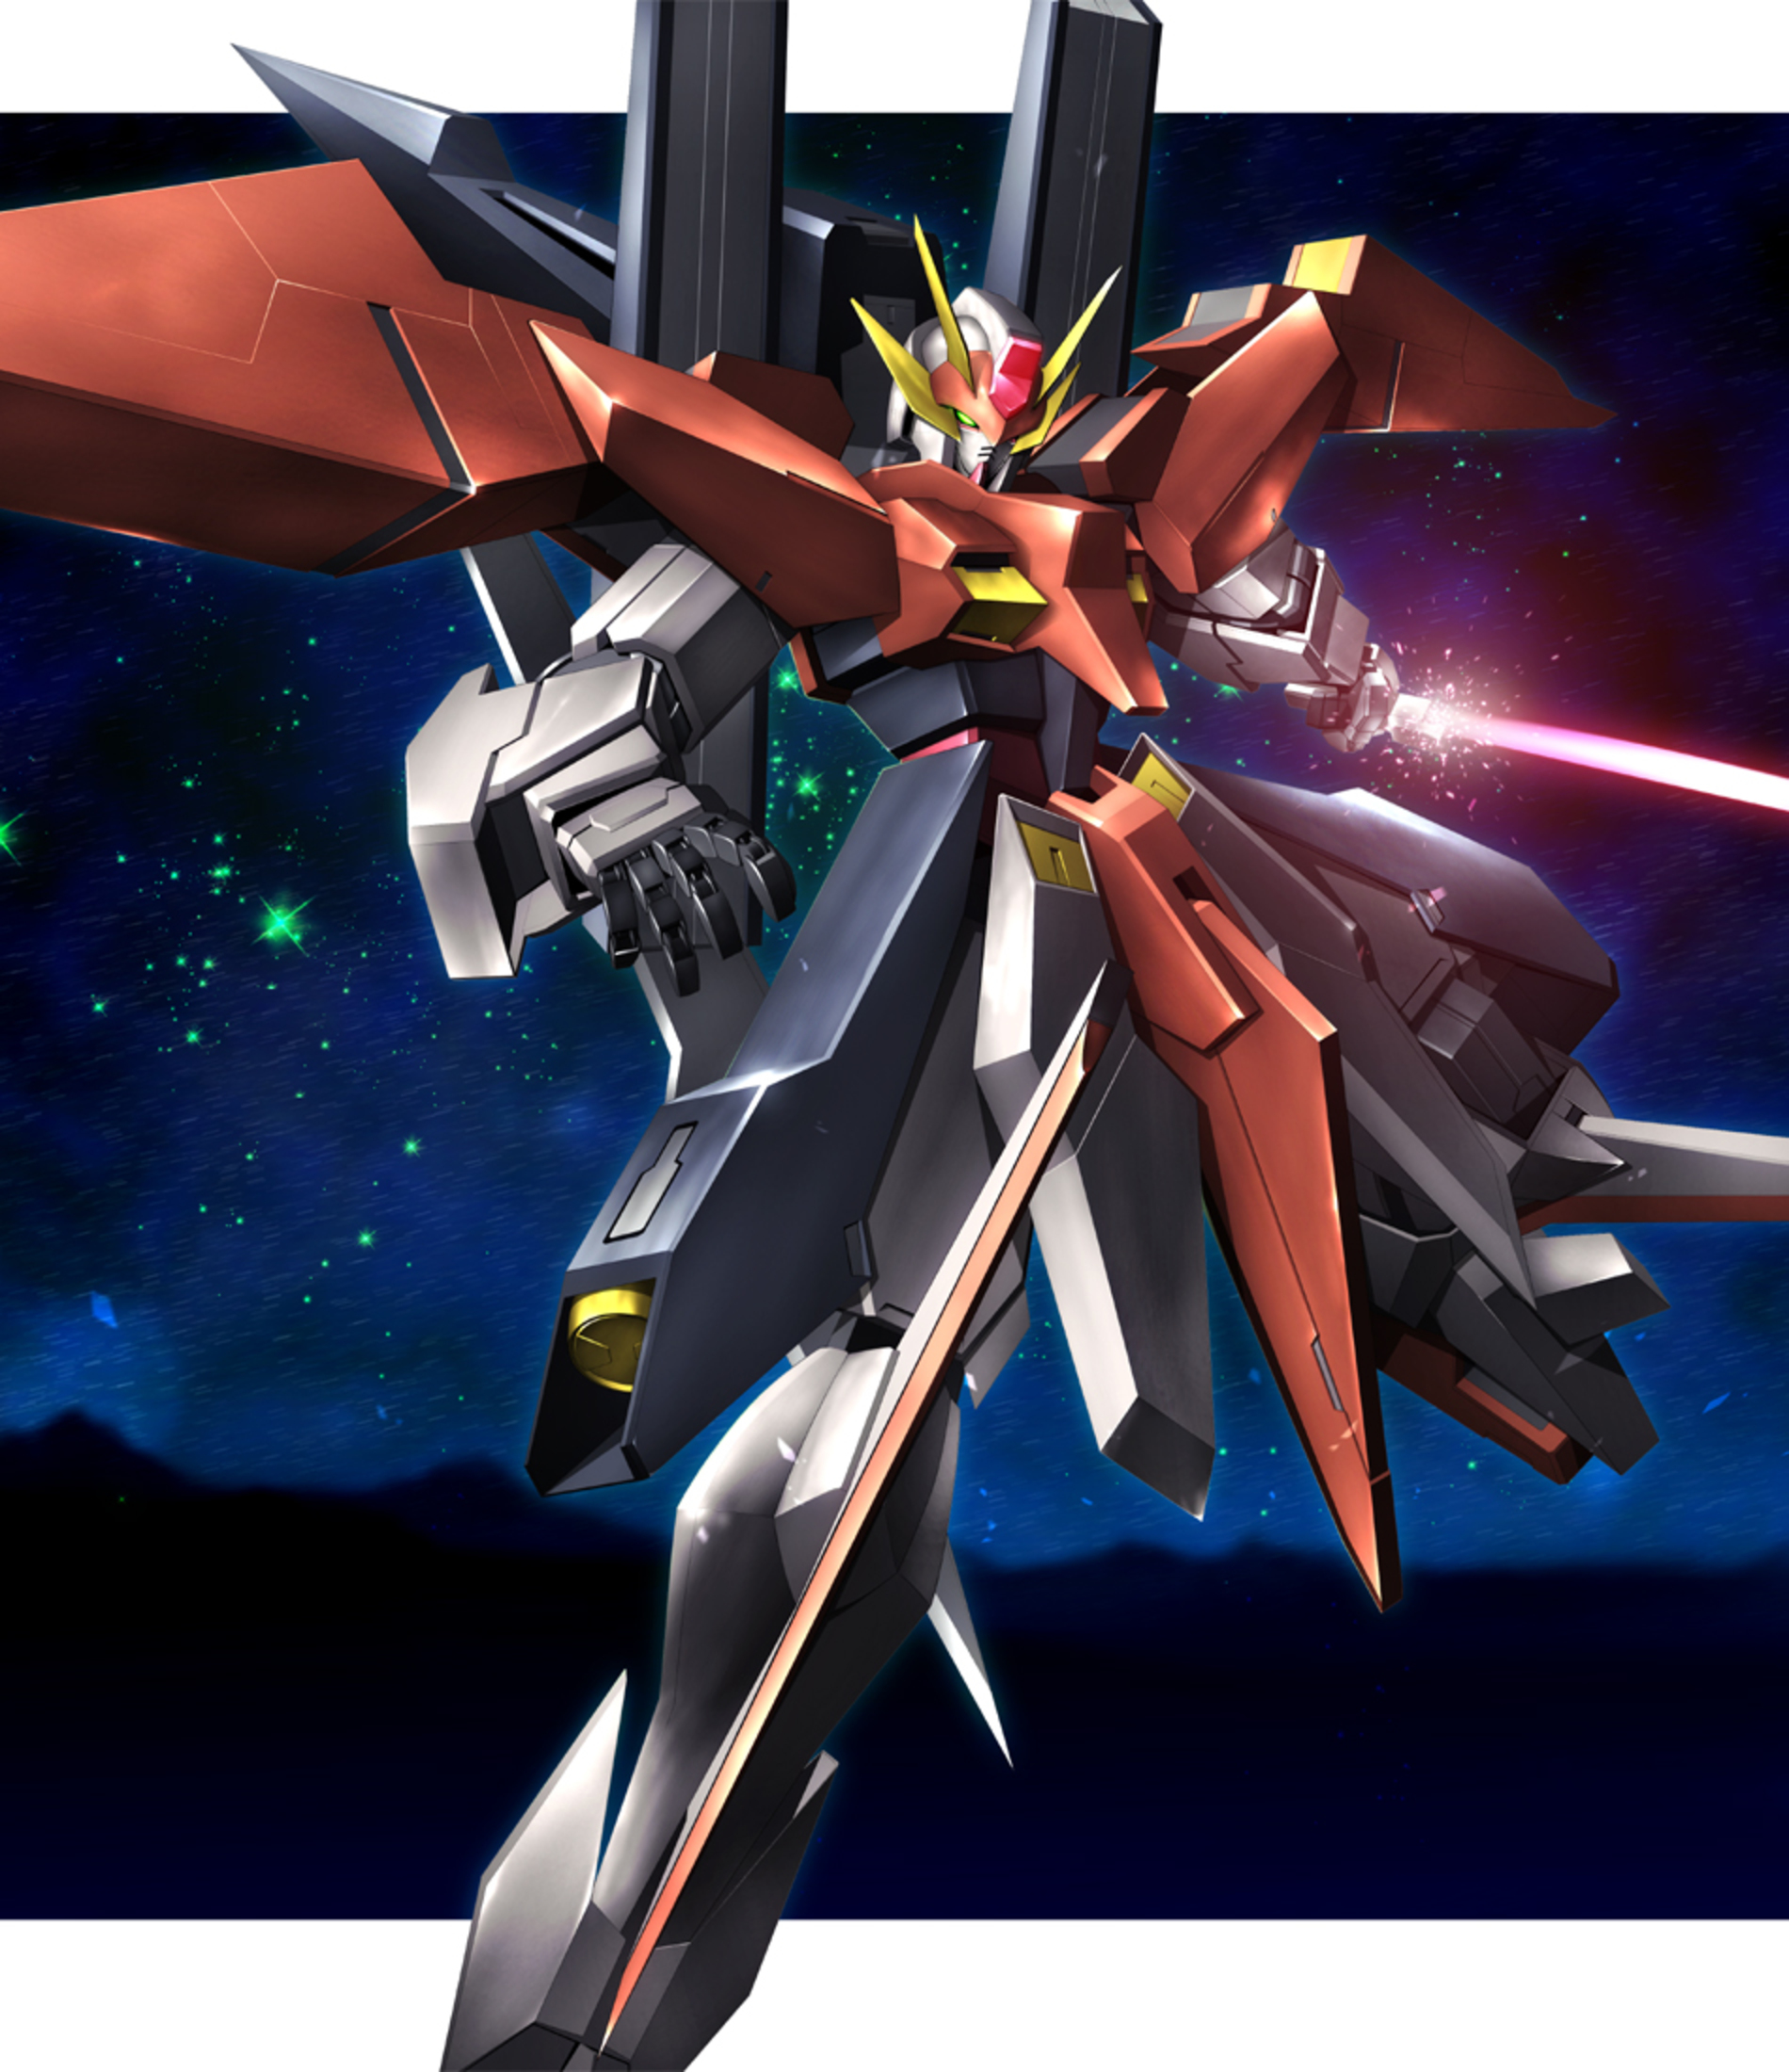 Arios Gundam Anime Mechs Gundam Super Robot Wars Mobile Suit Gundam 00 Artwork Digital Art Fan Art 1900x2200